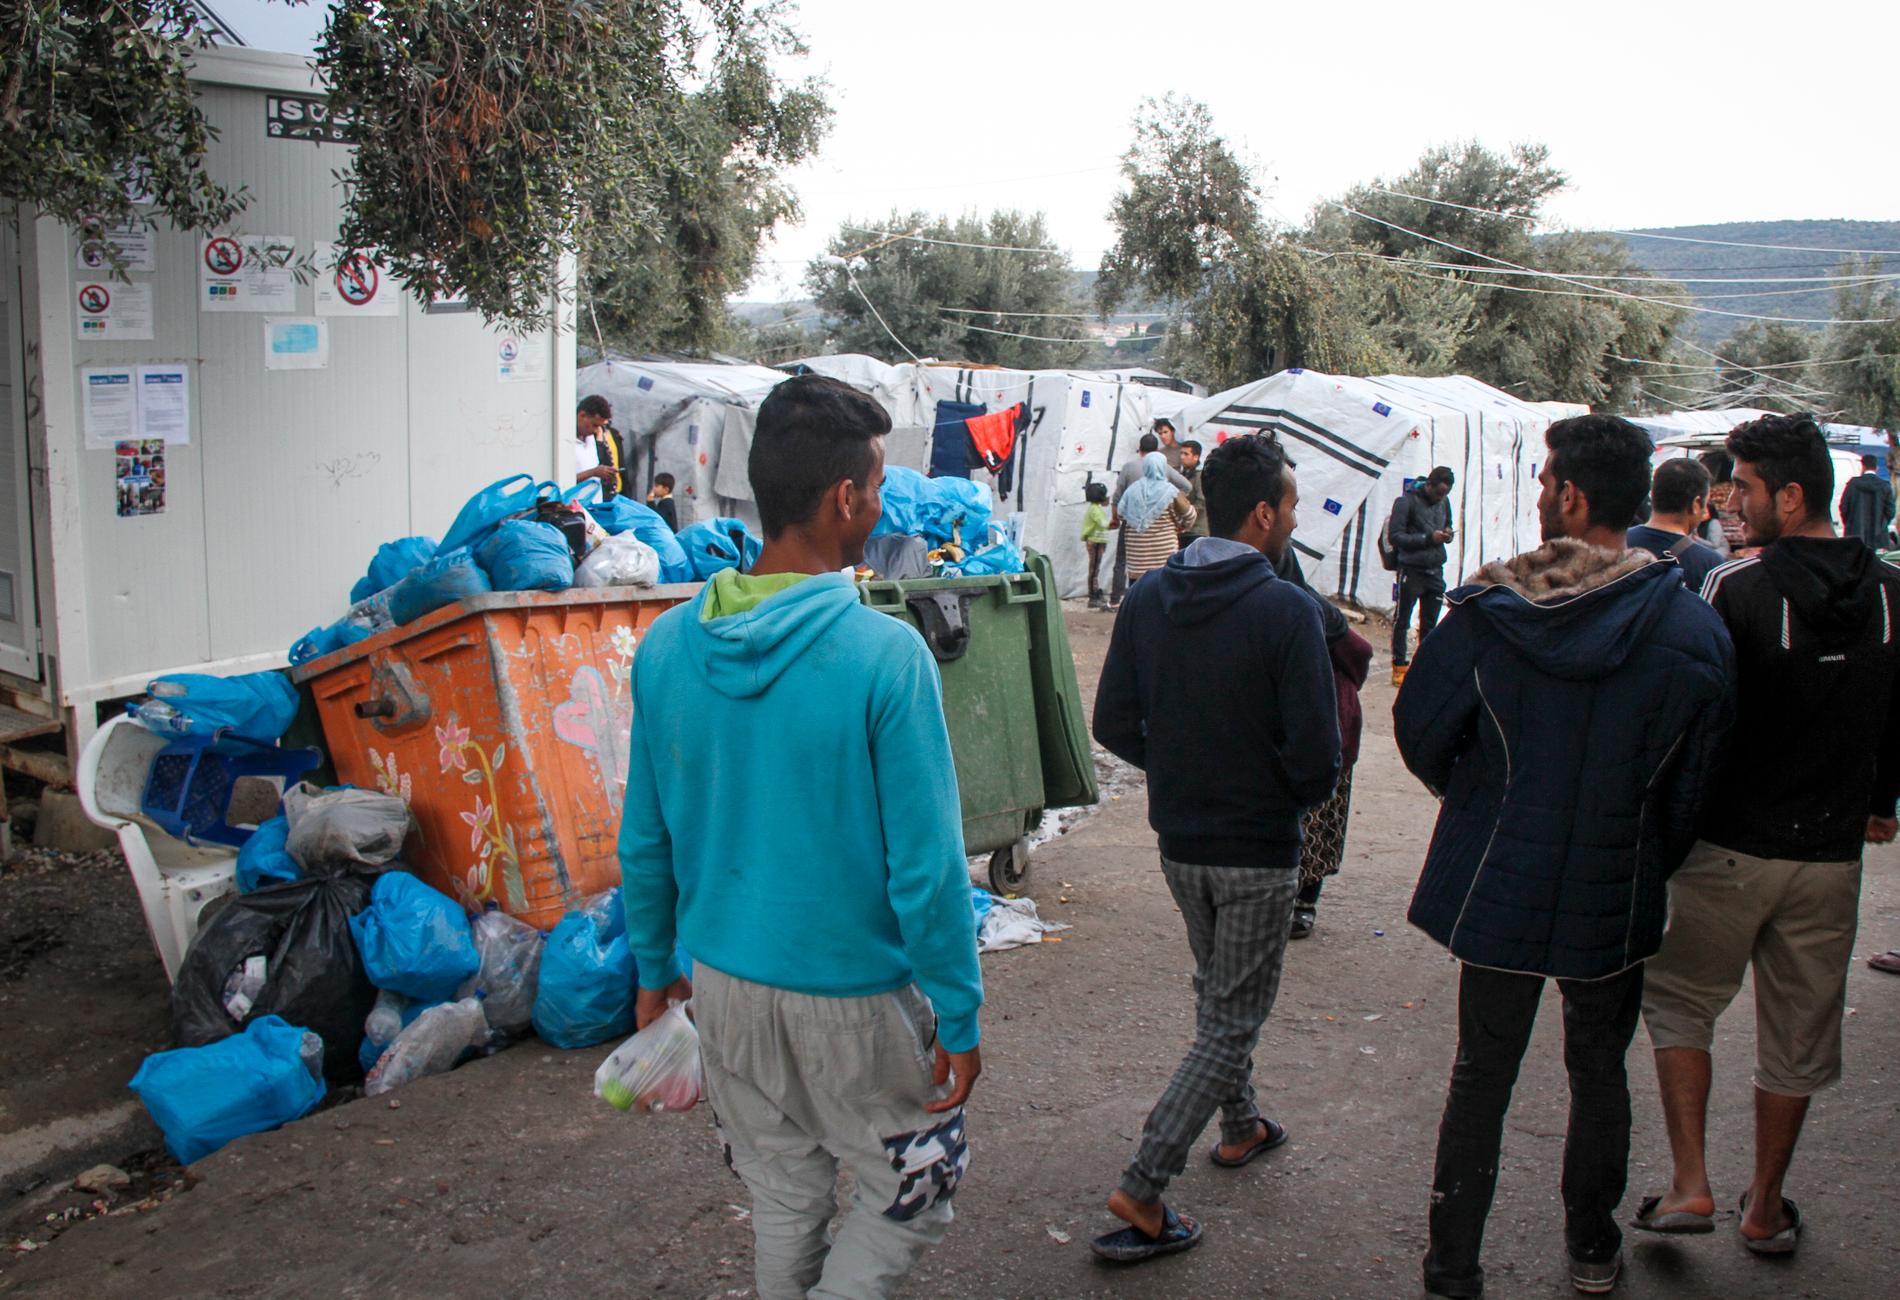 En överfull sopstation. I bakgrunden syns några av FN:s flyktingorgan UNHCR:s boendetält, i flyktinglägret Moria.